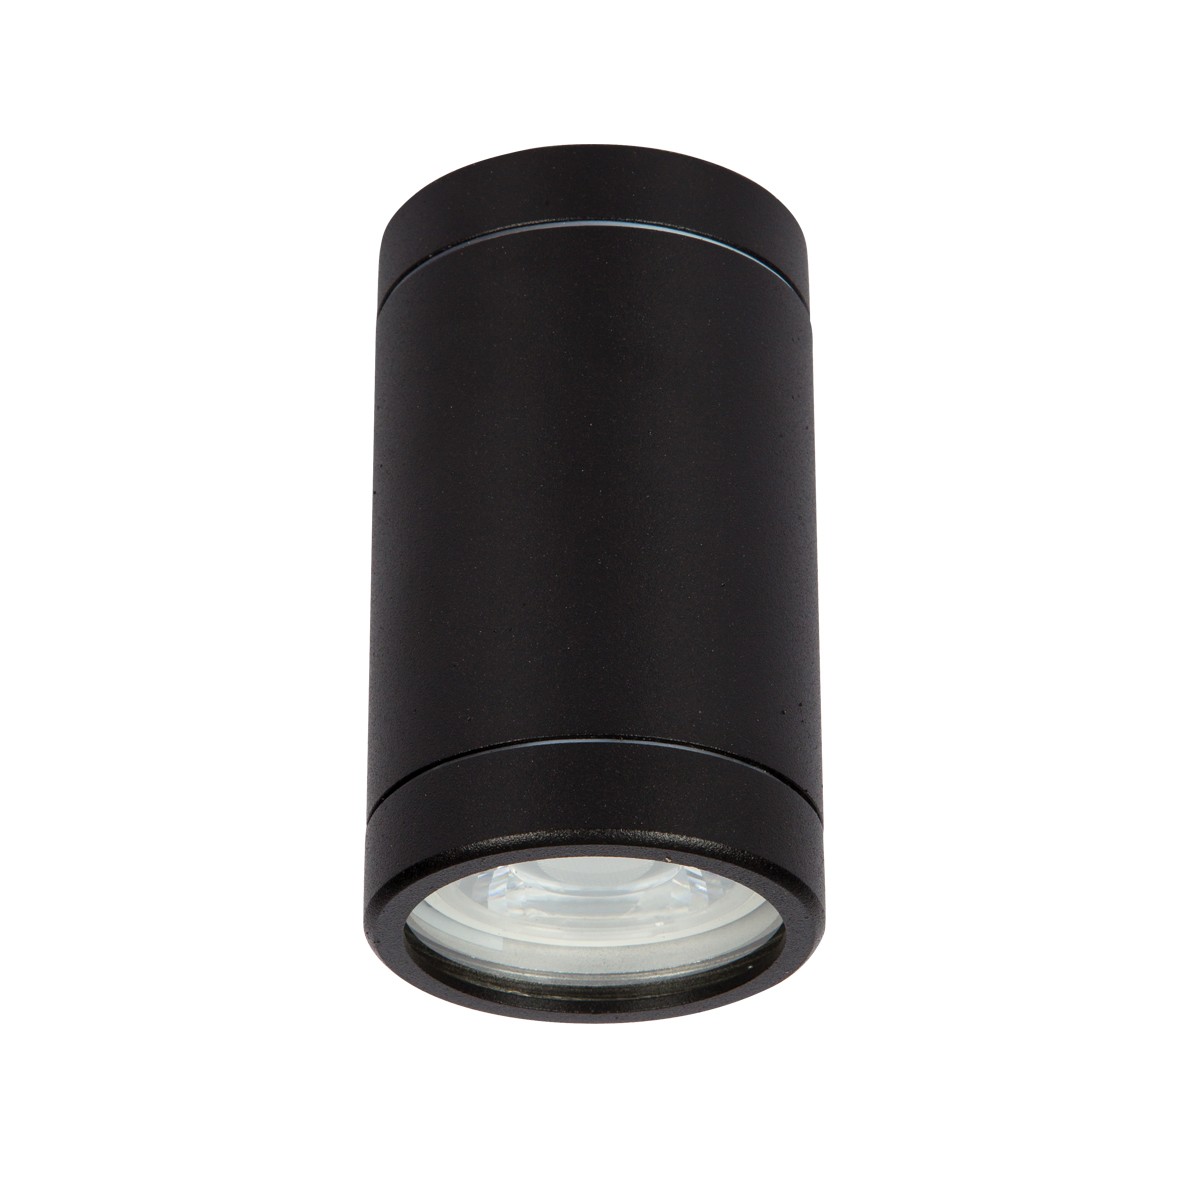 Φωτιστικό Αλουμινίου Οροφής IP54 GU10 D60mm Μαύρο Χρώμα        VK/01061/B